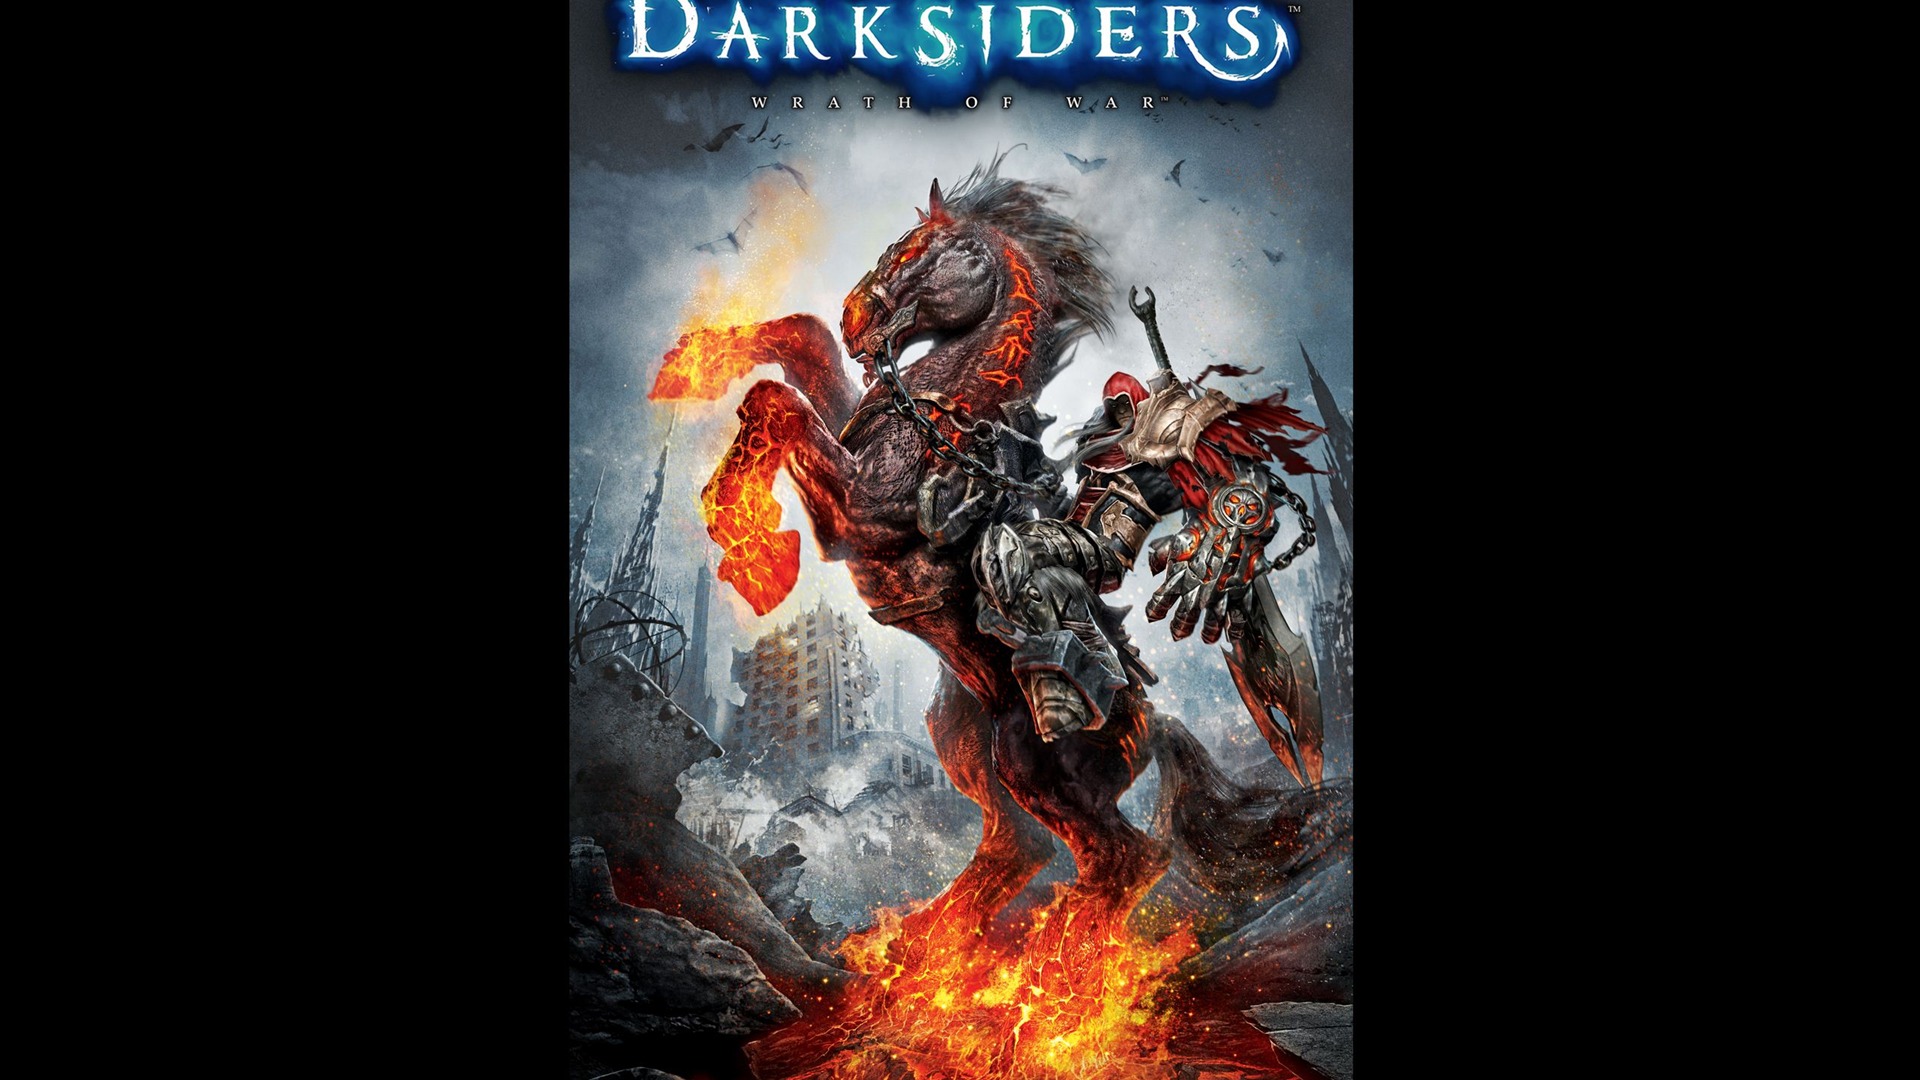 Darksiders: Wrath of War 暗黑血统: 战神之怒 高清壁纸7 - 1920x1080